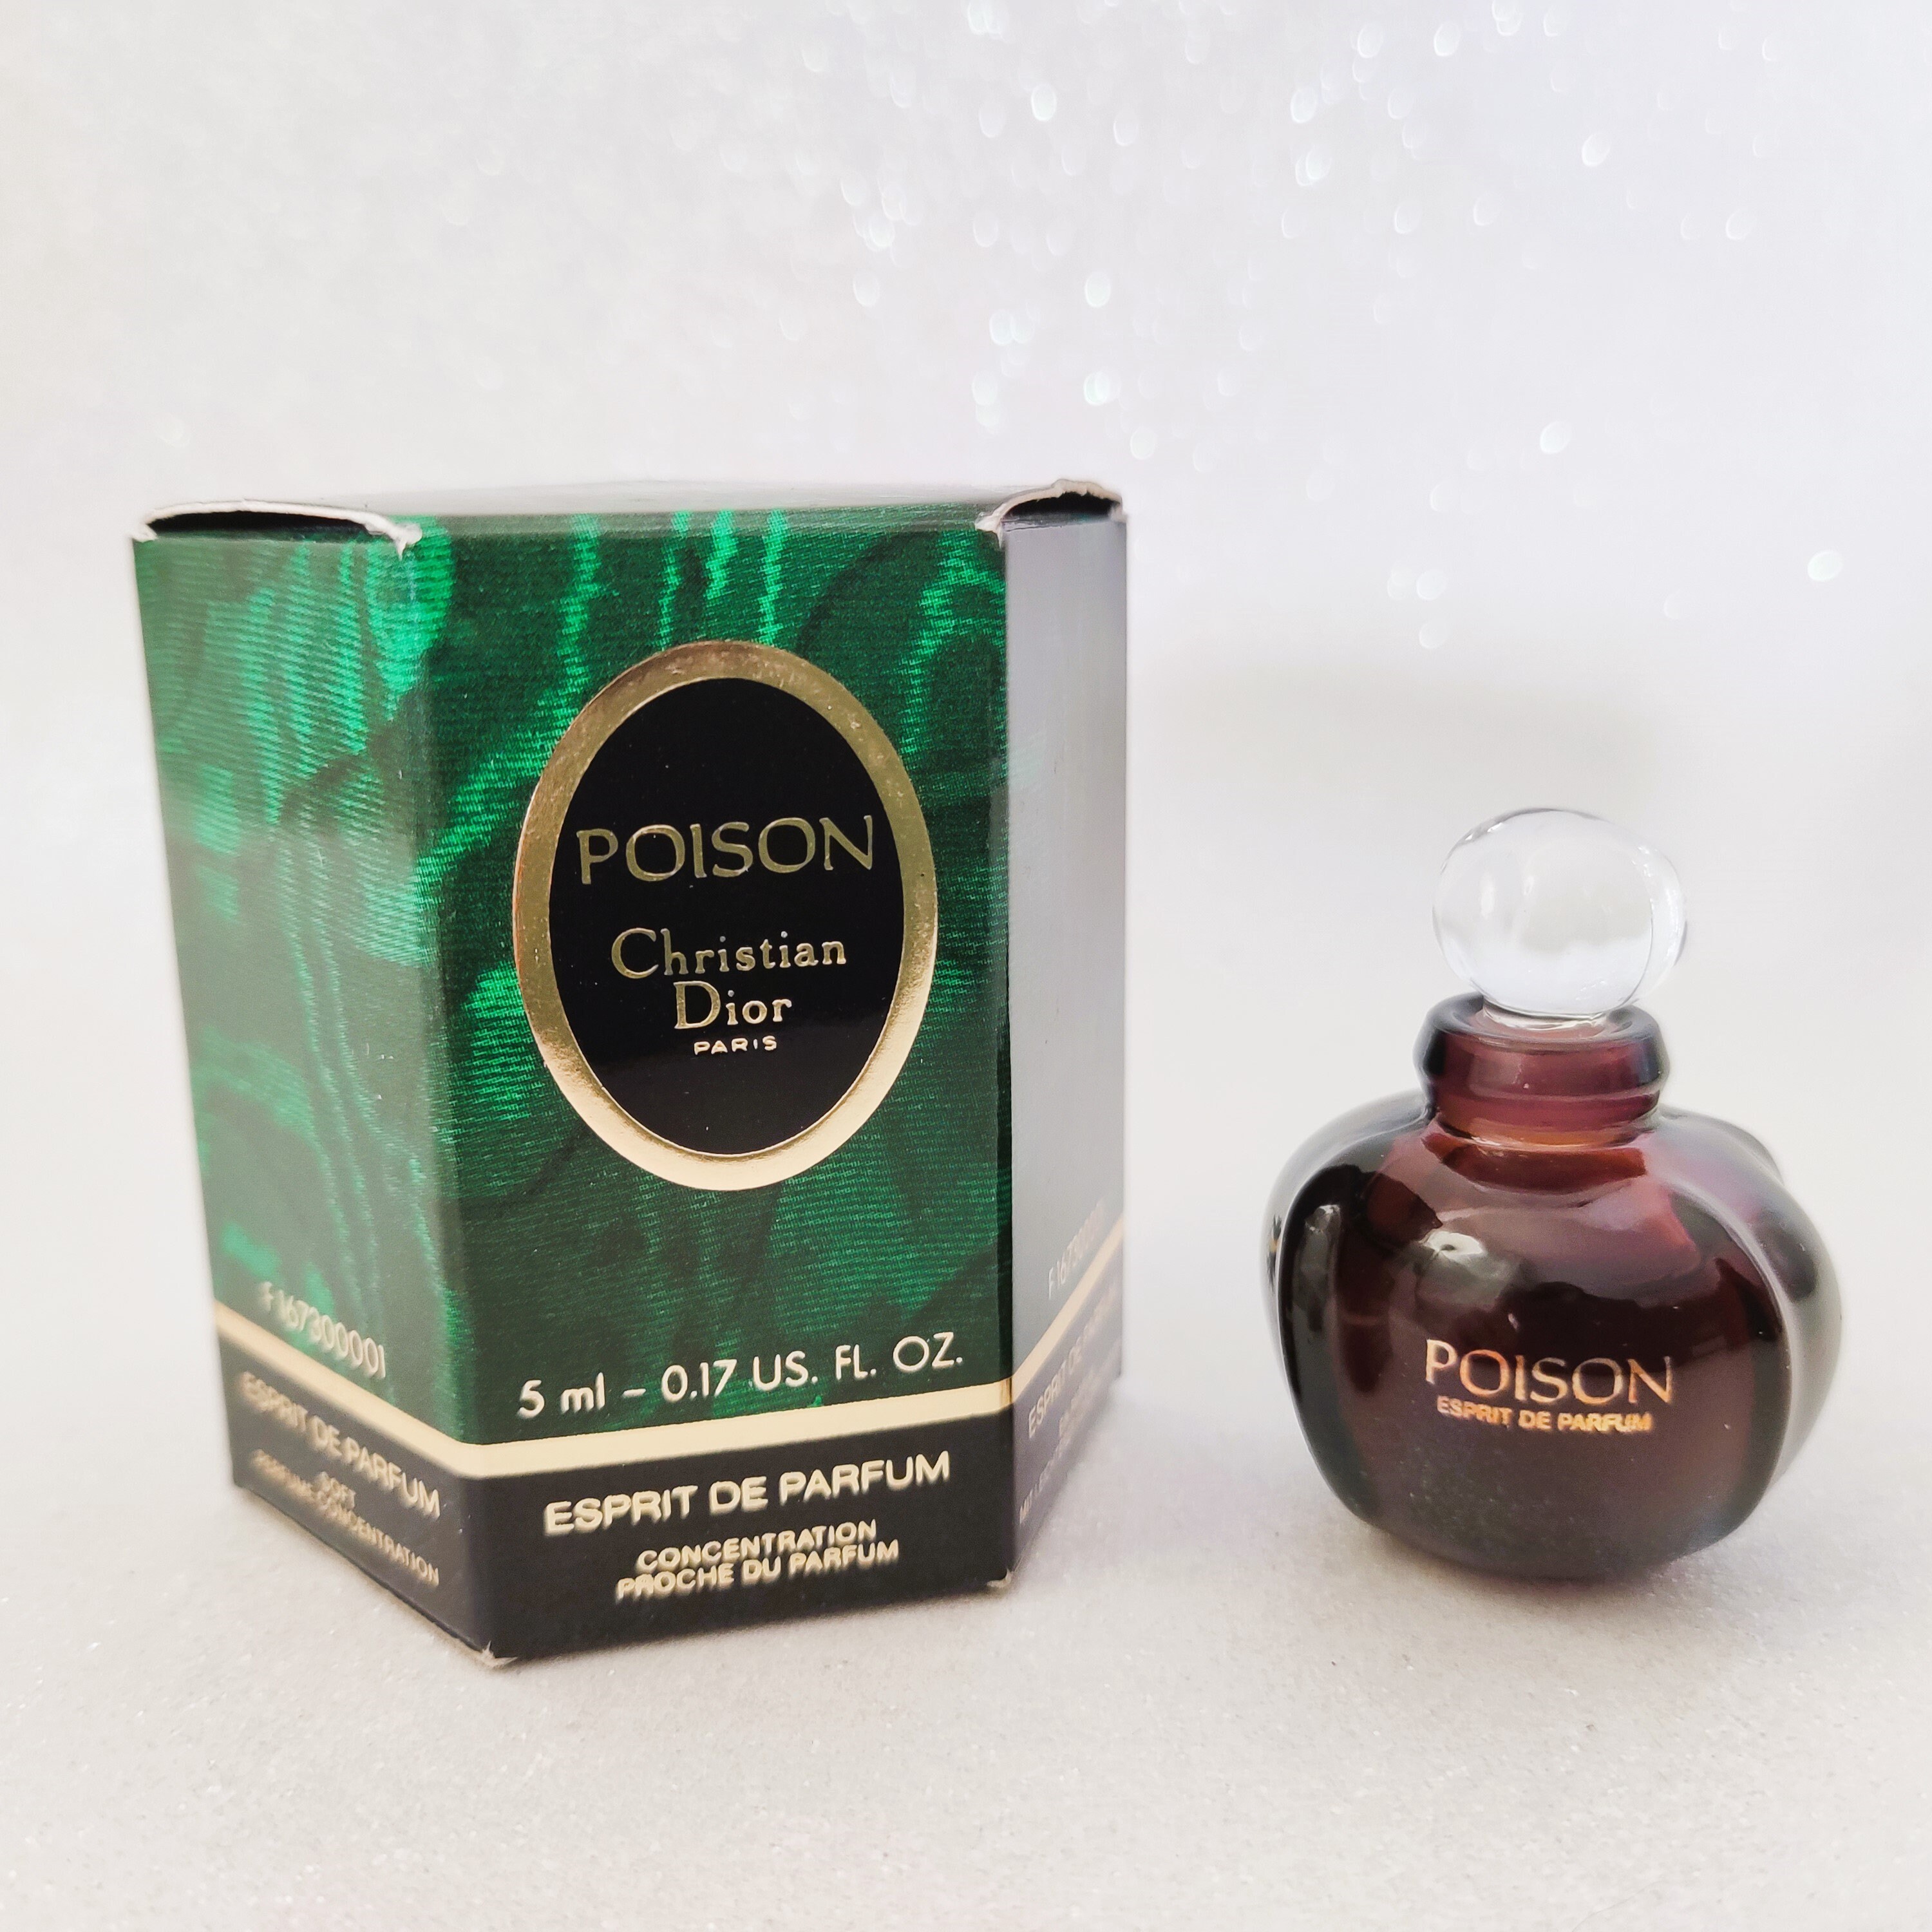 Bleu de Chanel 5 ml perfume oil concentration over 30% perfume perfume eau  de toilette women's fragrances - AliExpress